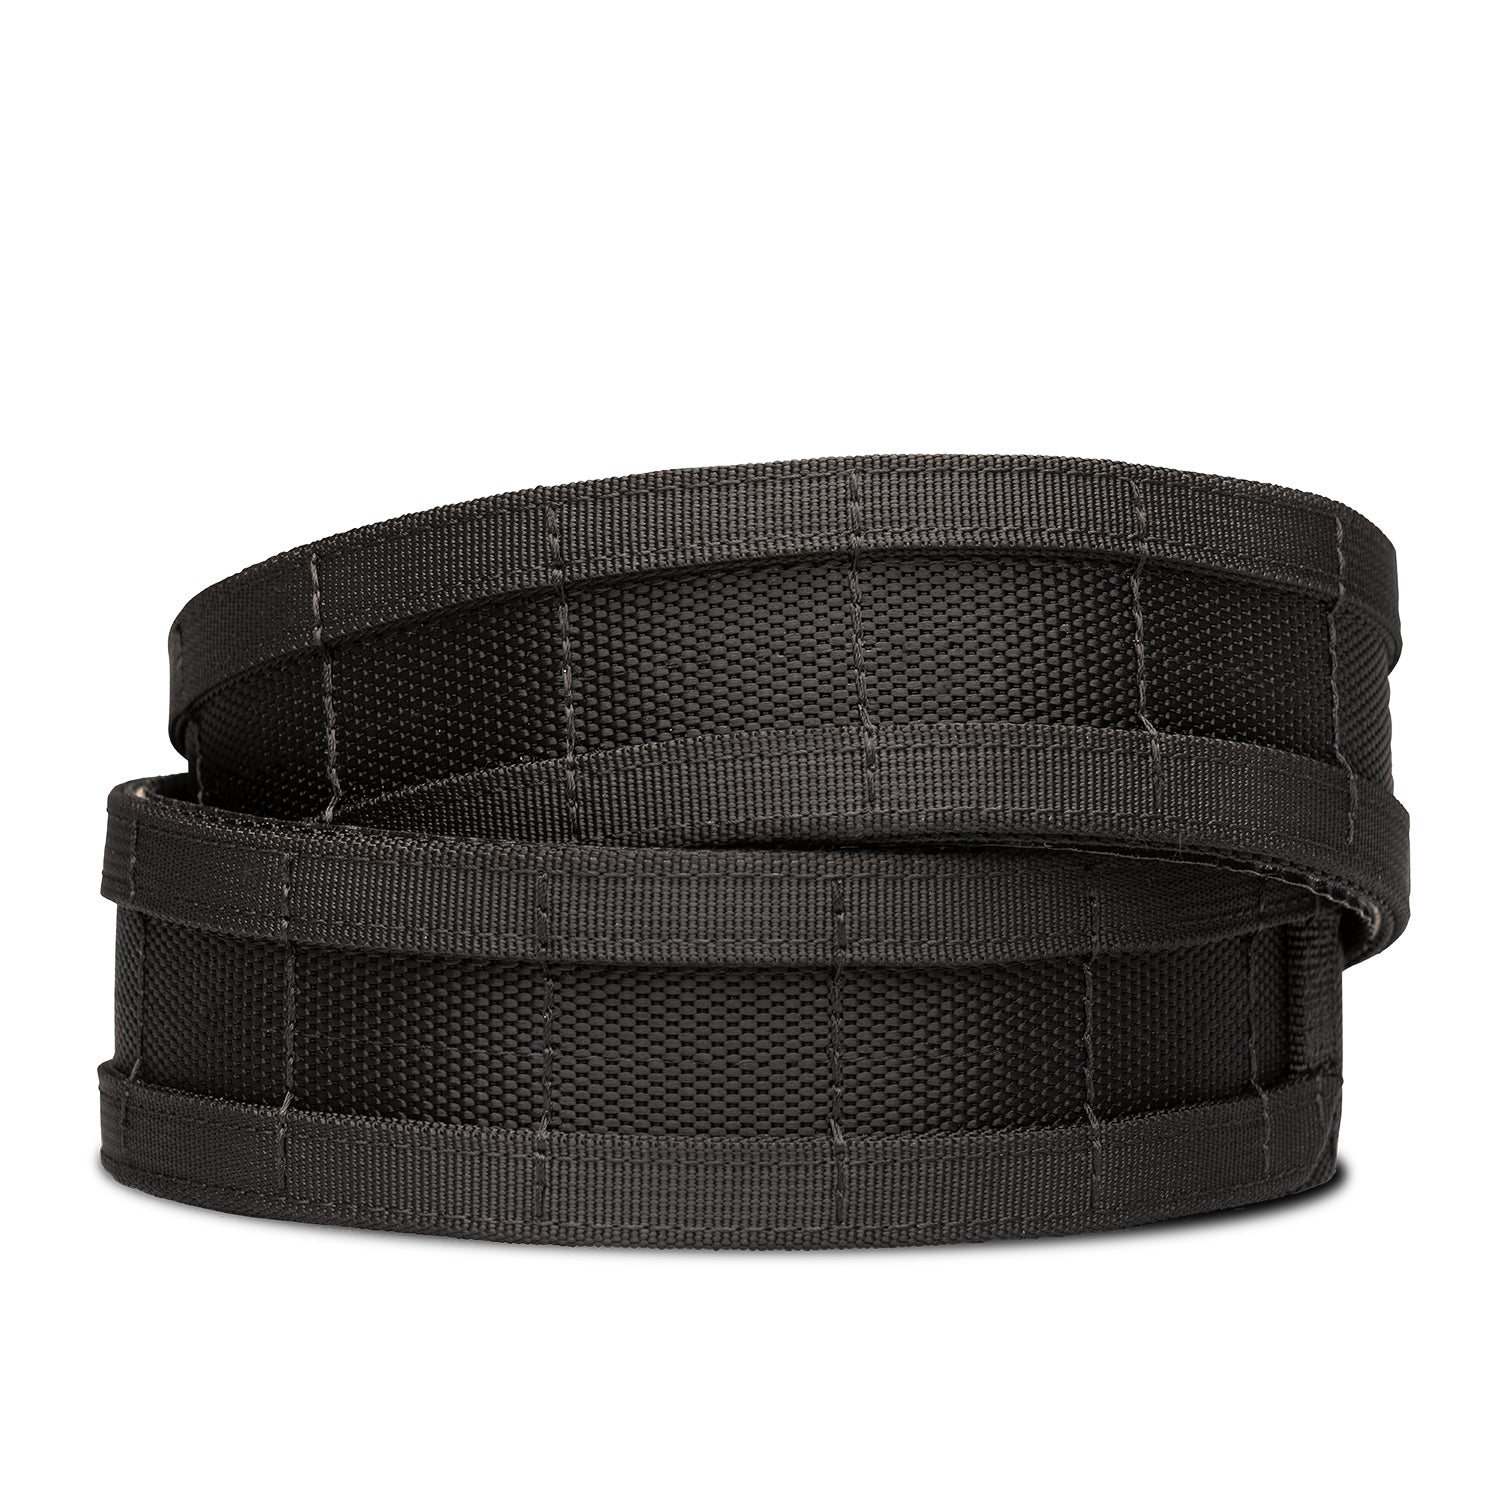 Best Rated Gun Belts - B1 Black Battle Belt | Kore Essentials 24 - 48 / Reinforced Inner Belt